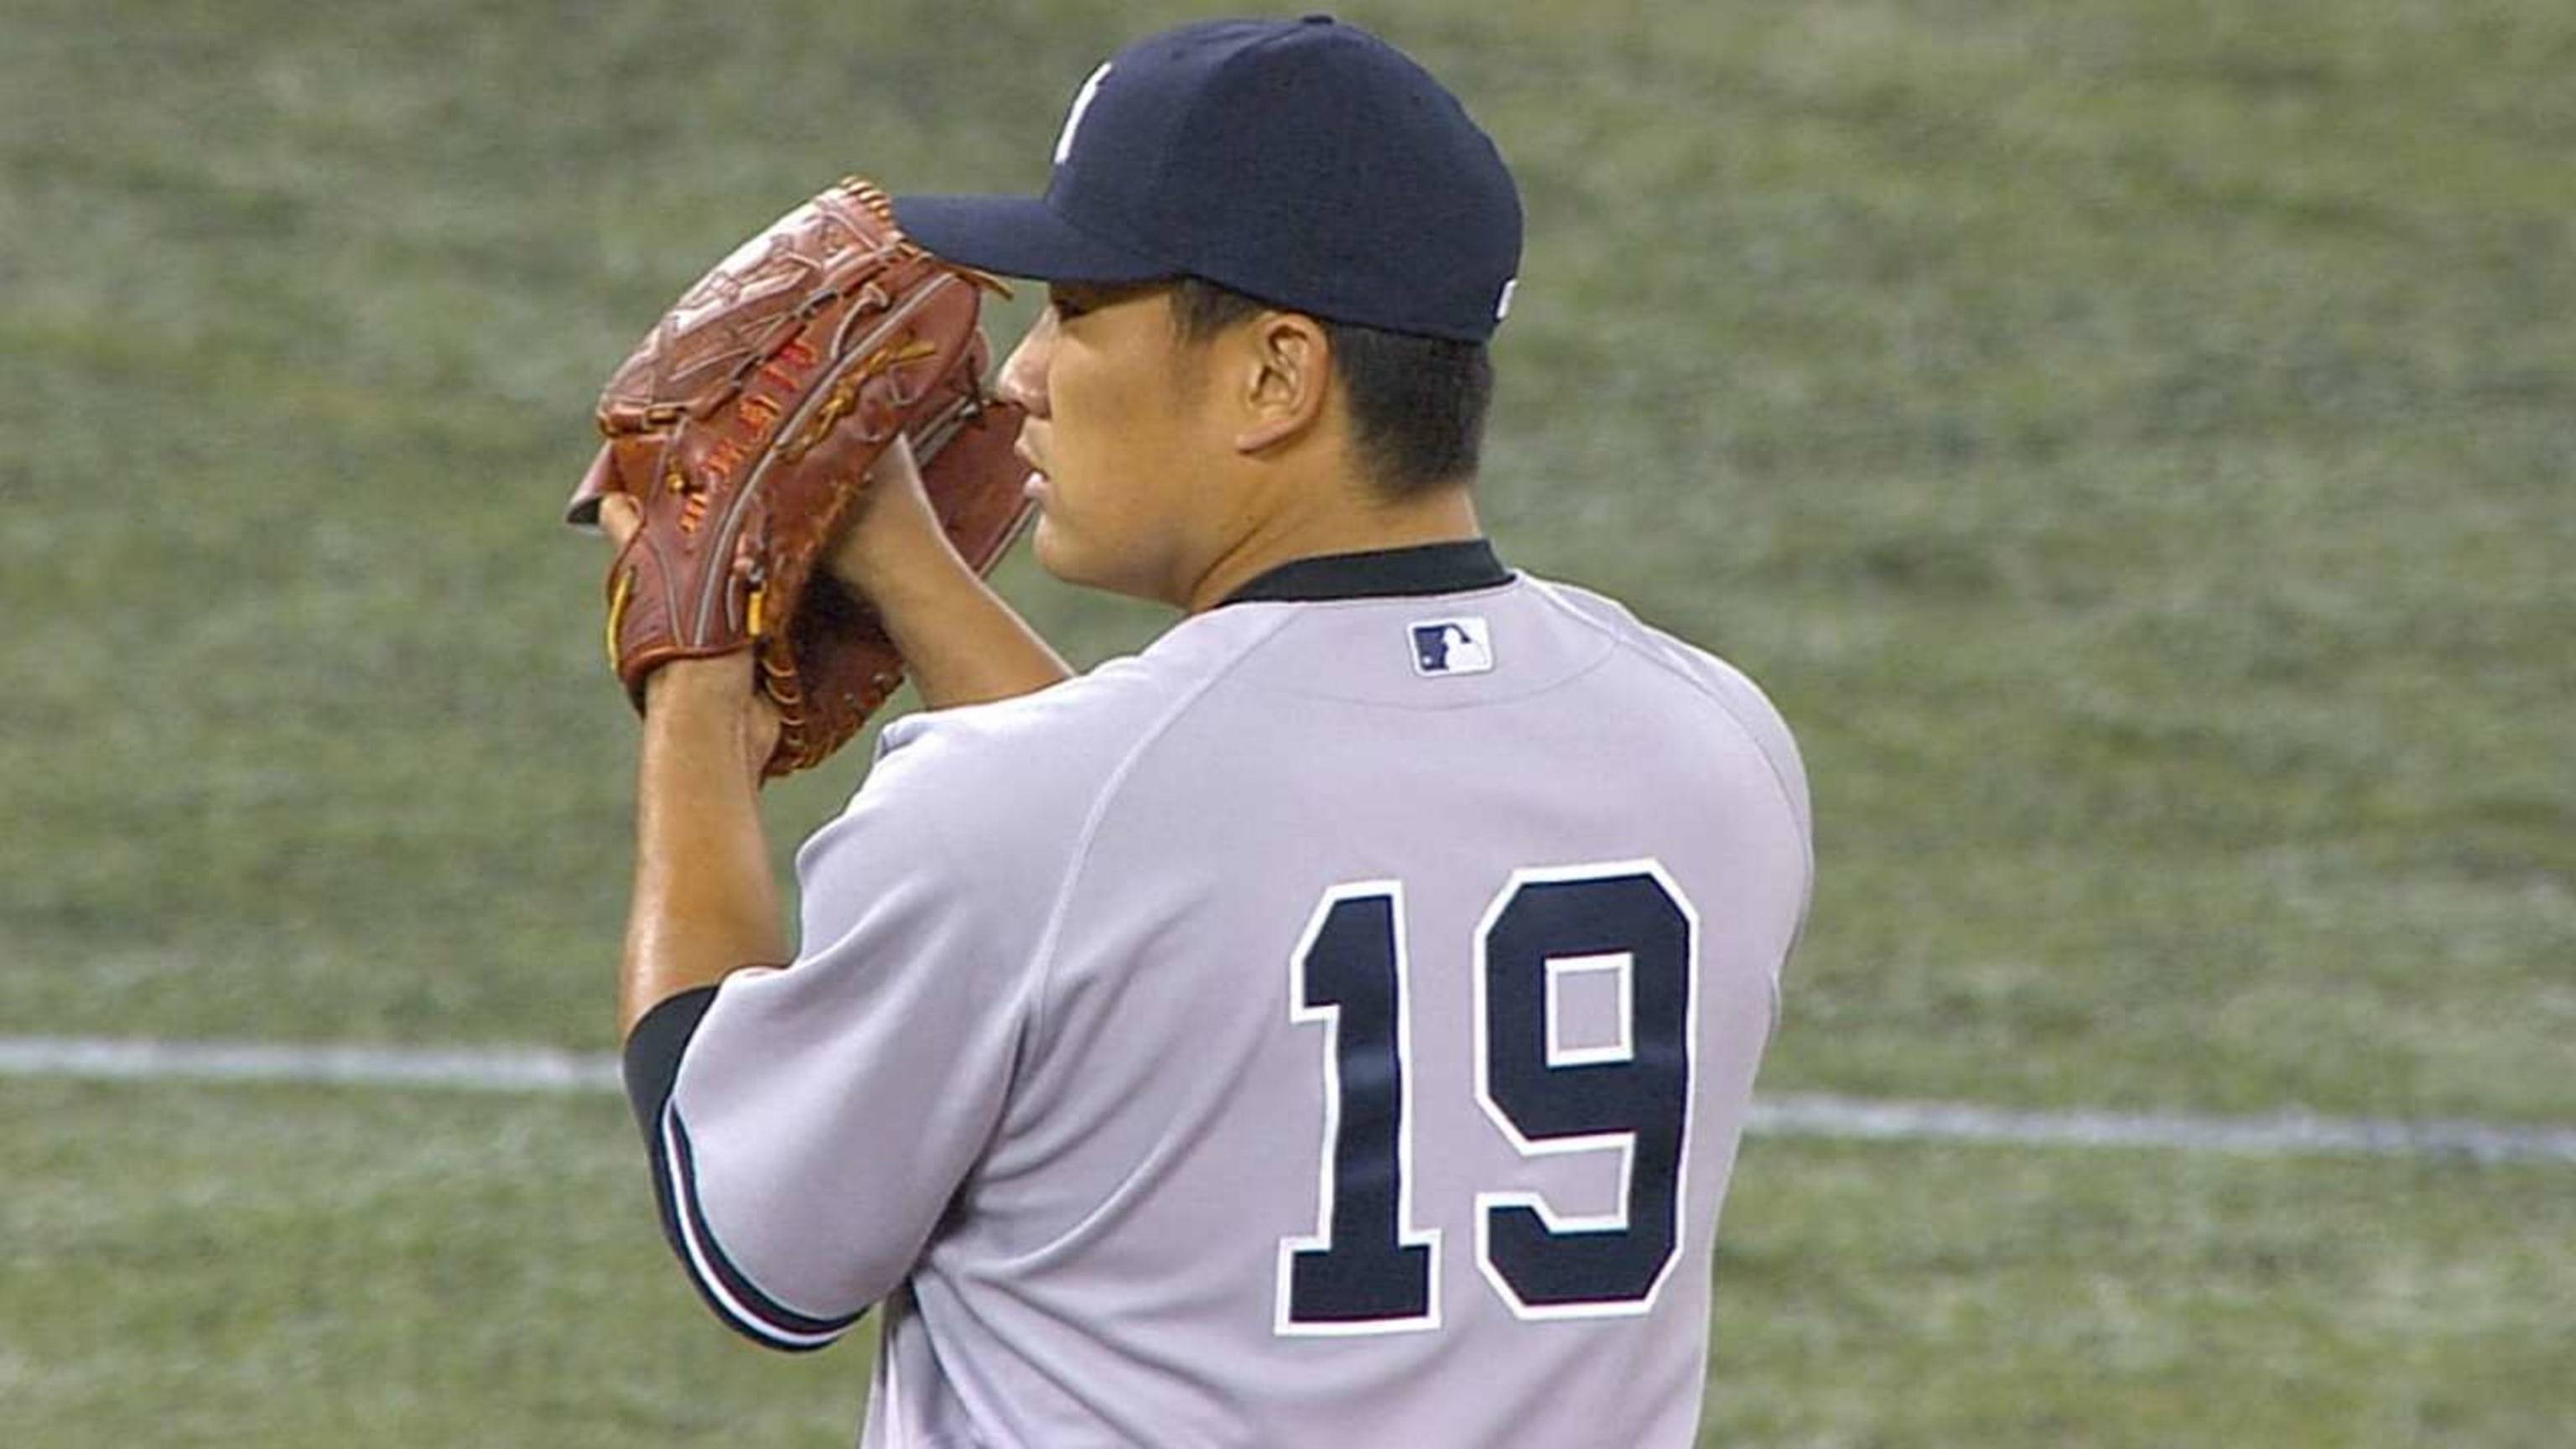 Yankees sign Masahiro Tanaka for 7 years, $155M